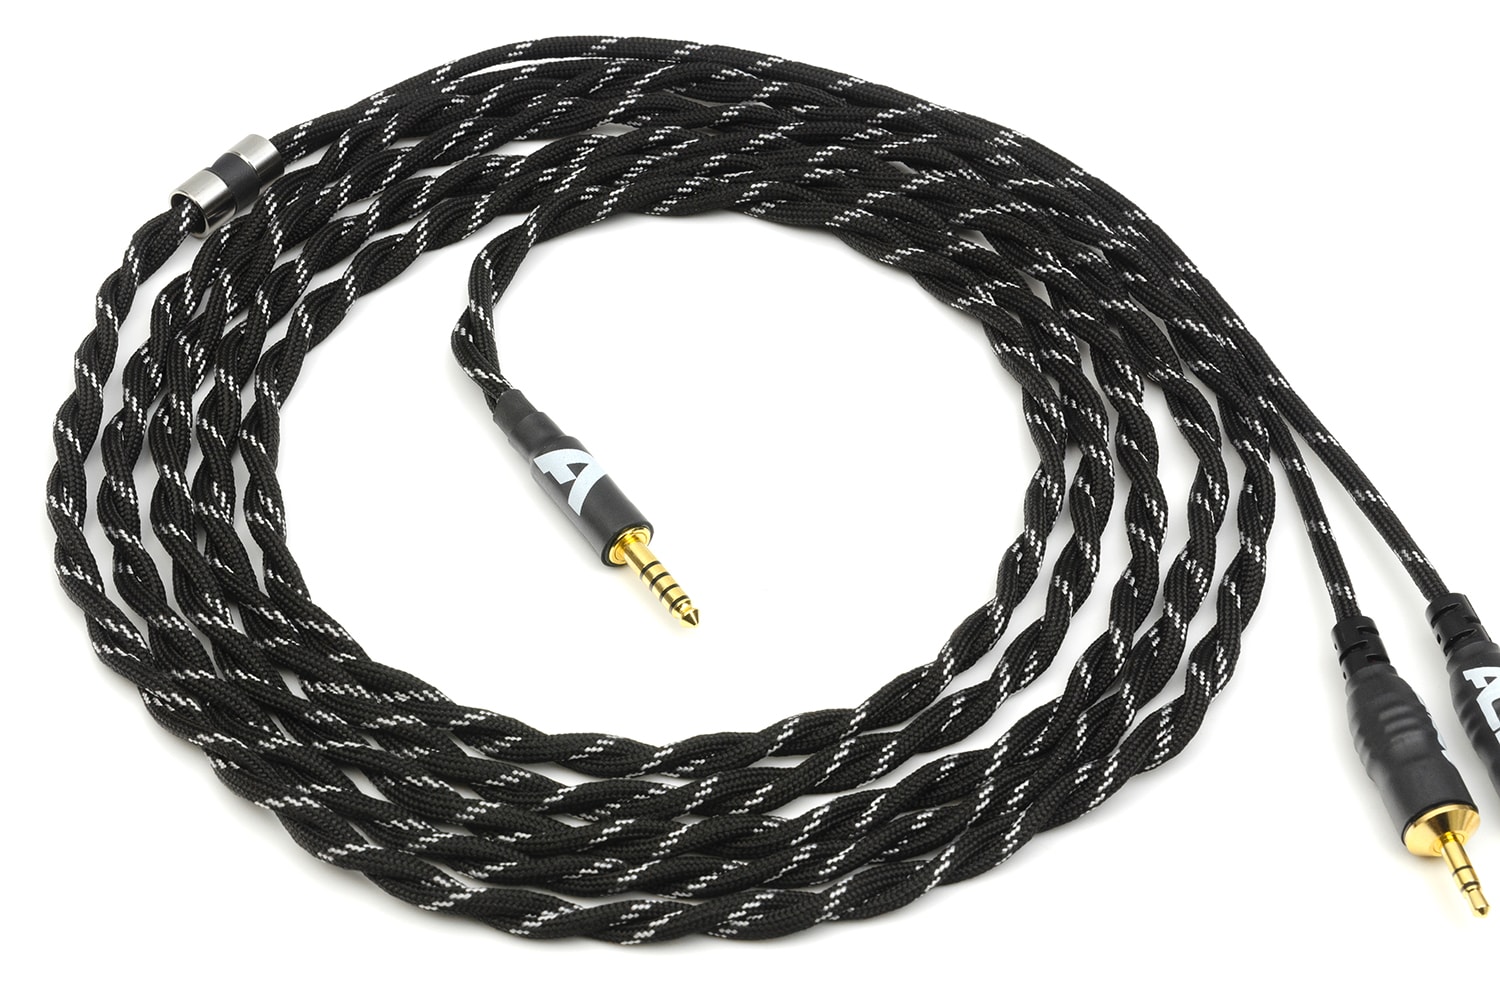 Kabel słuchawkowy zbalansowany AC3 MK2 do HiFiMAN/Kennerton/Pioneer